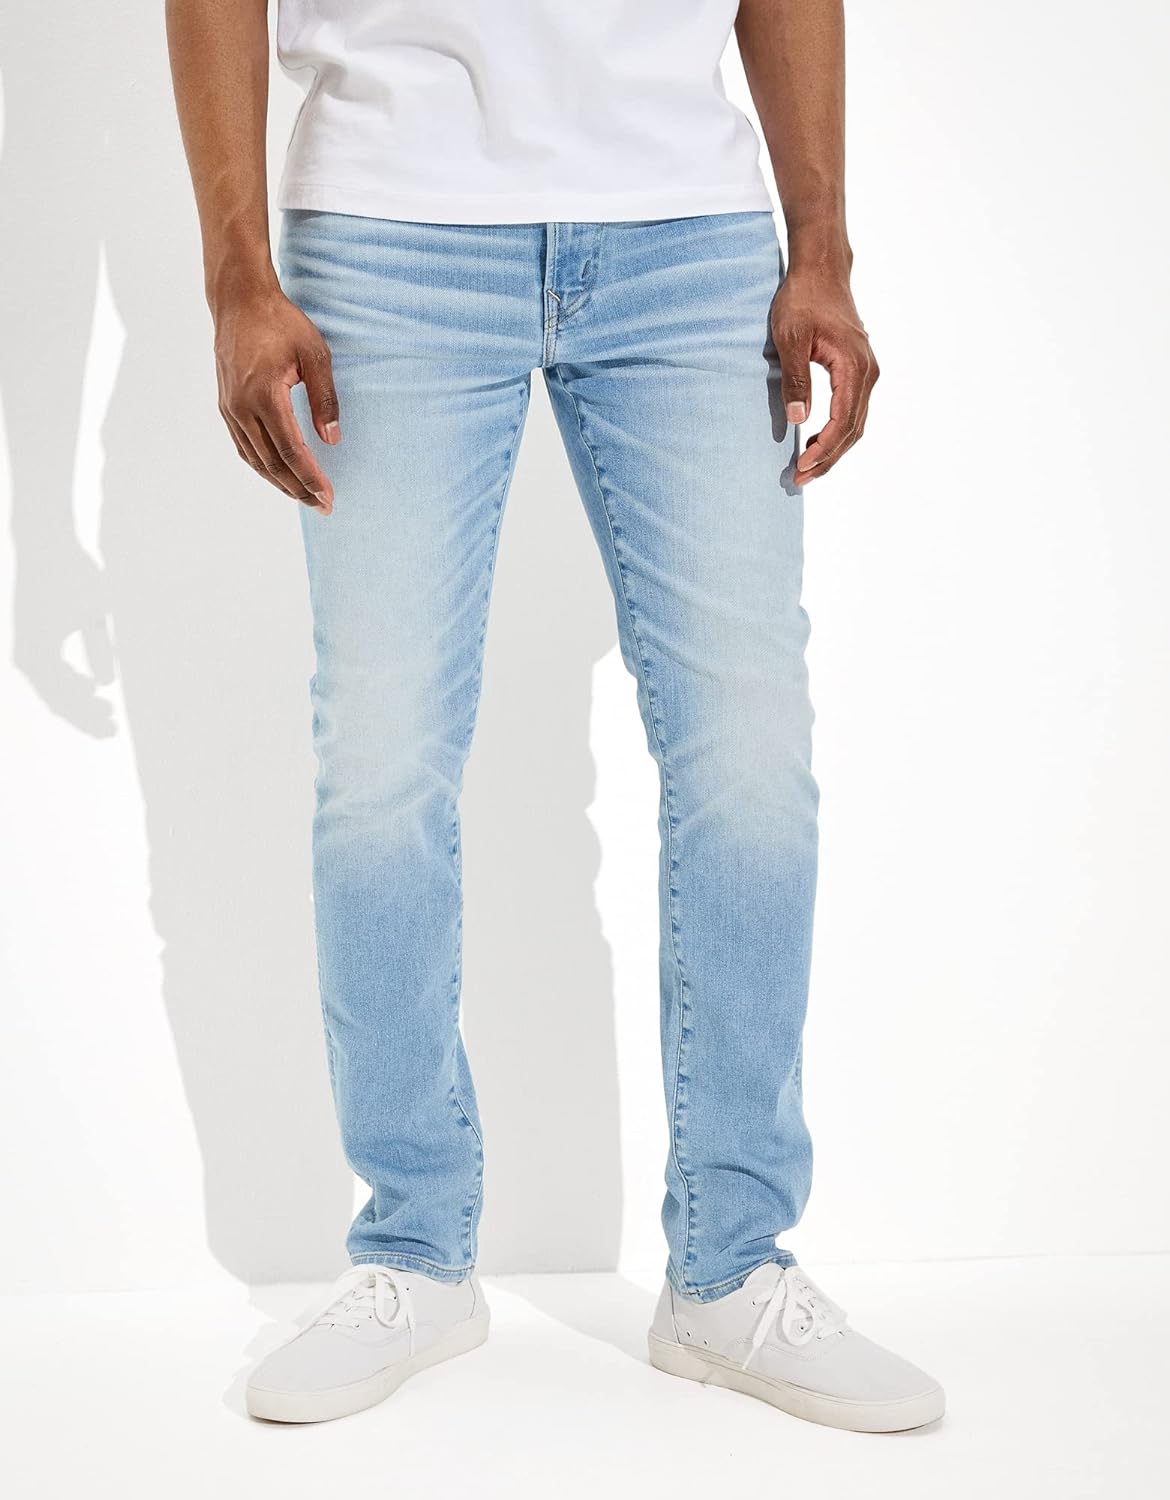 American Eagle Men's Flex Slim Straight Jean